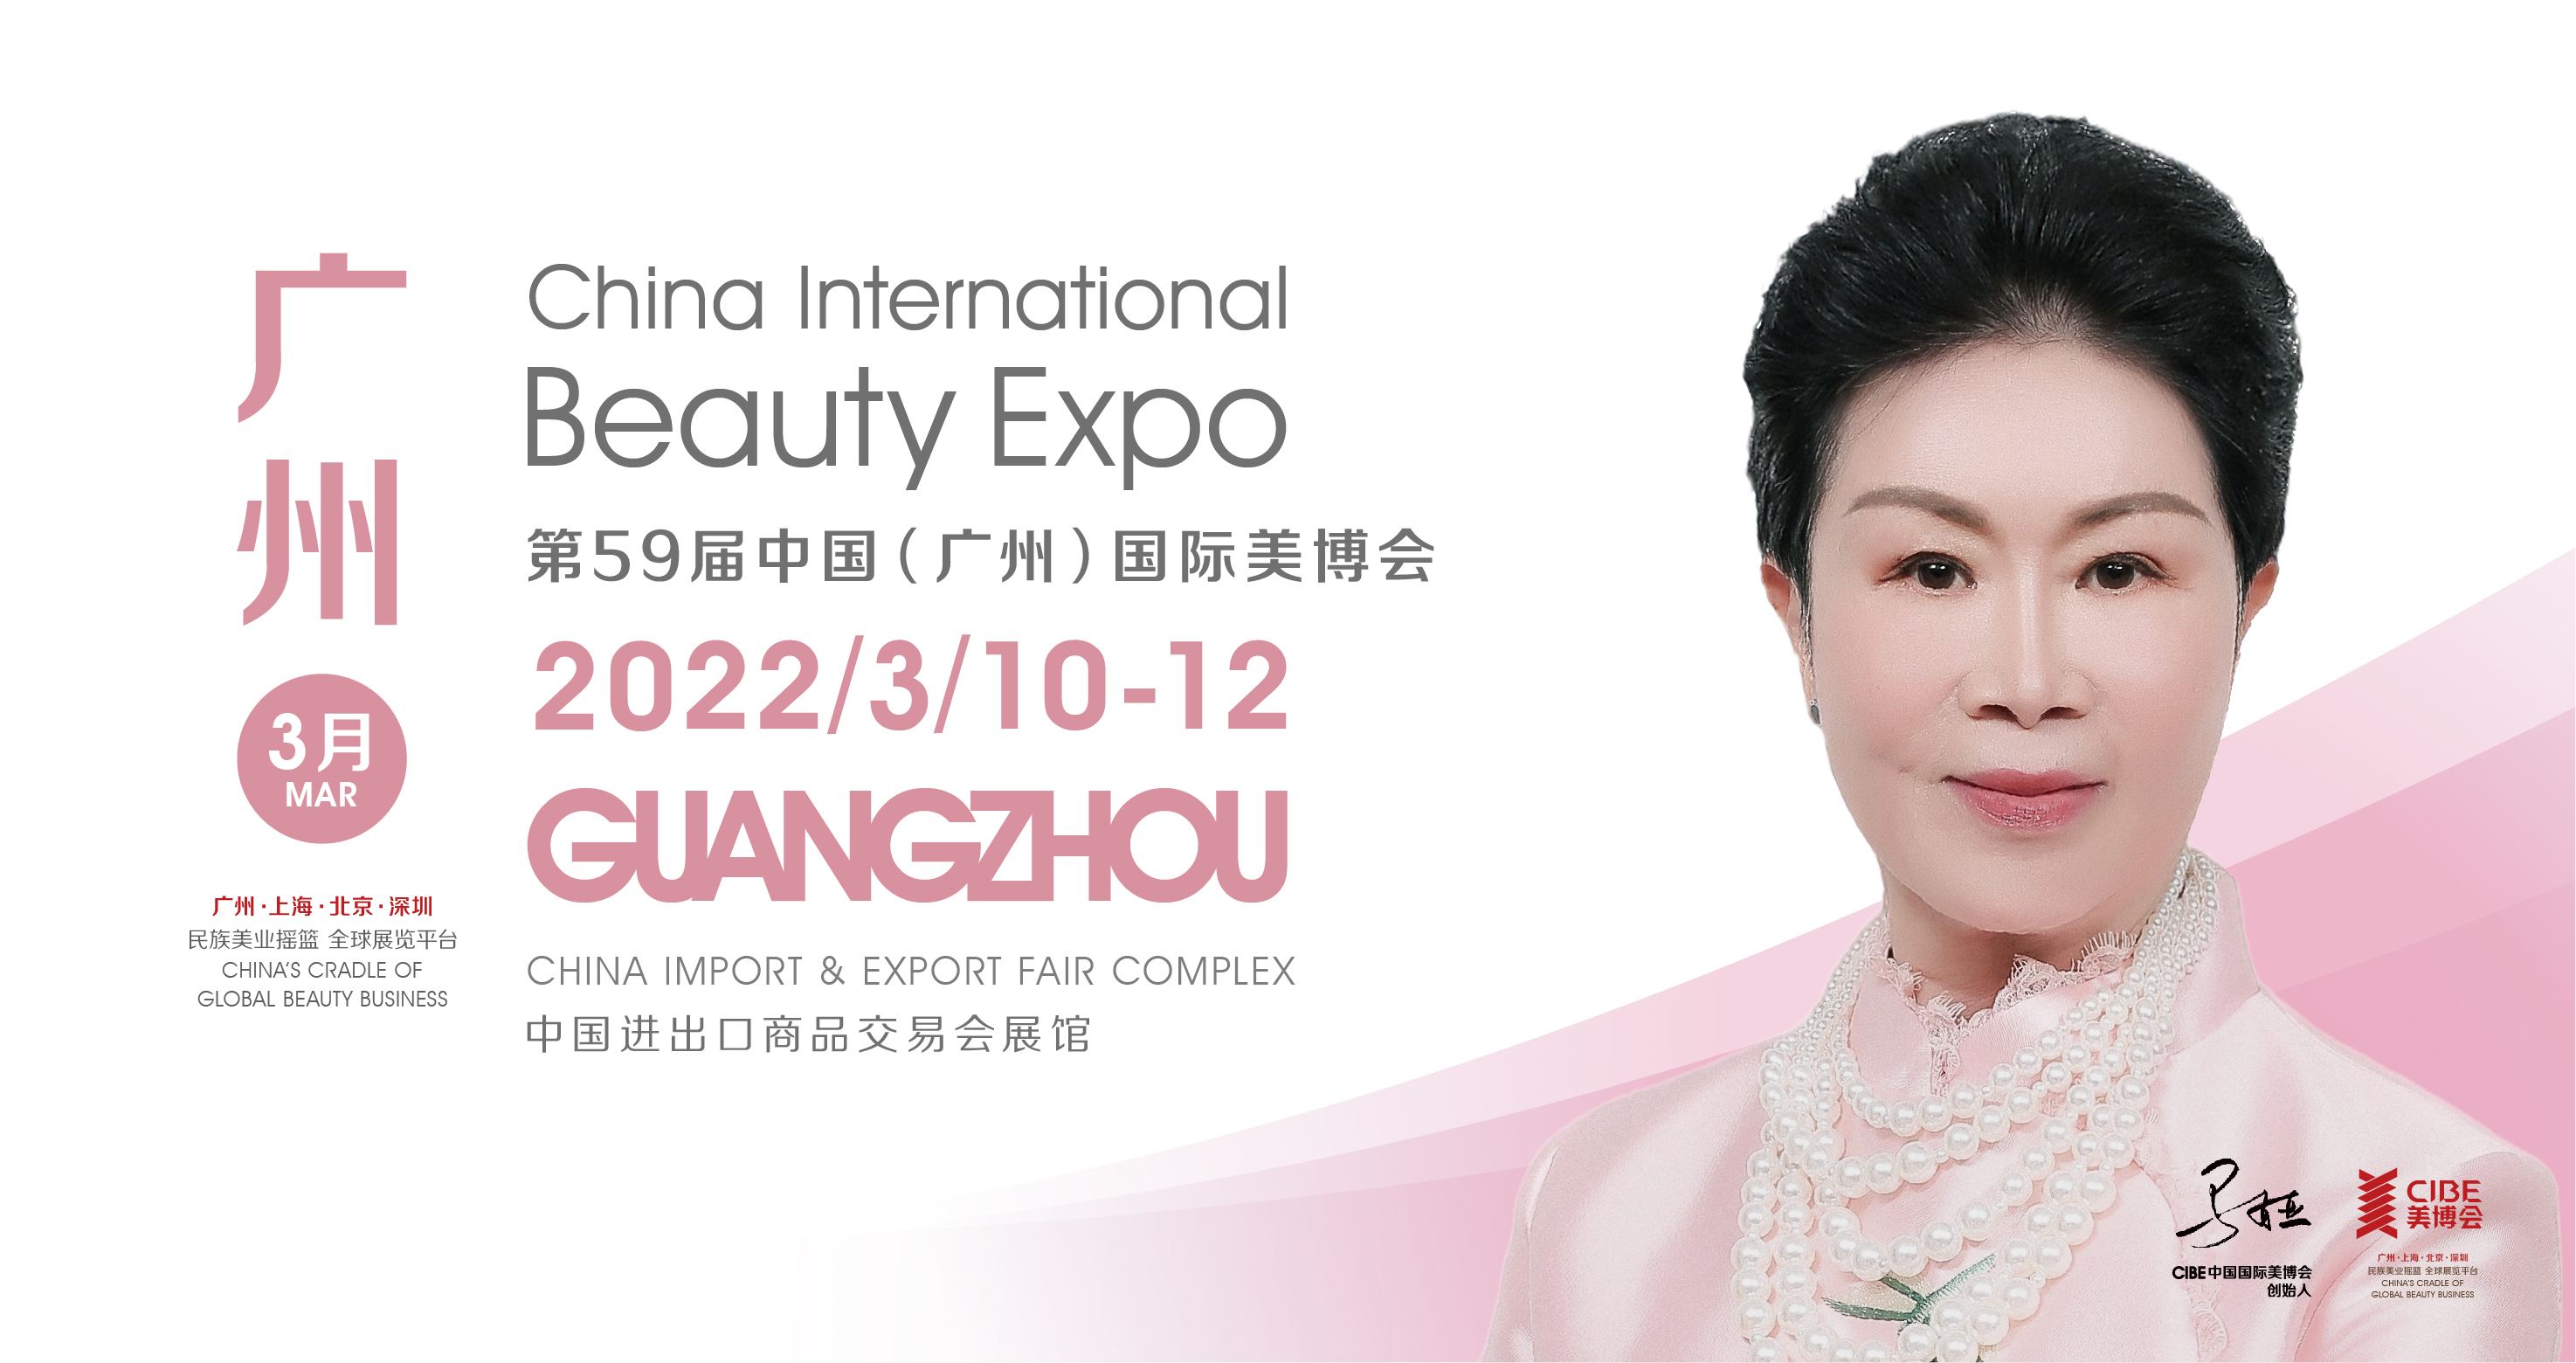 59. Kiinan (Guangzhou) kansainvälinen kauneusnäyttely vuonna 2022